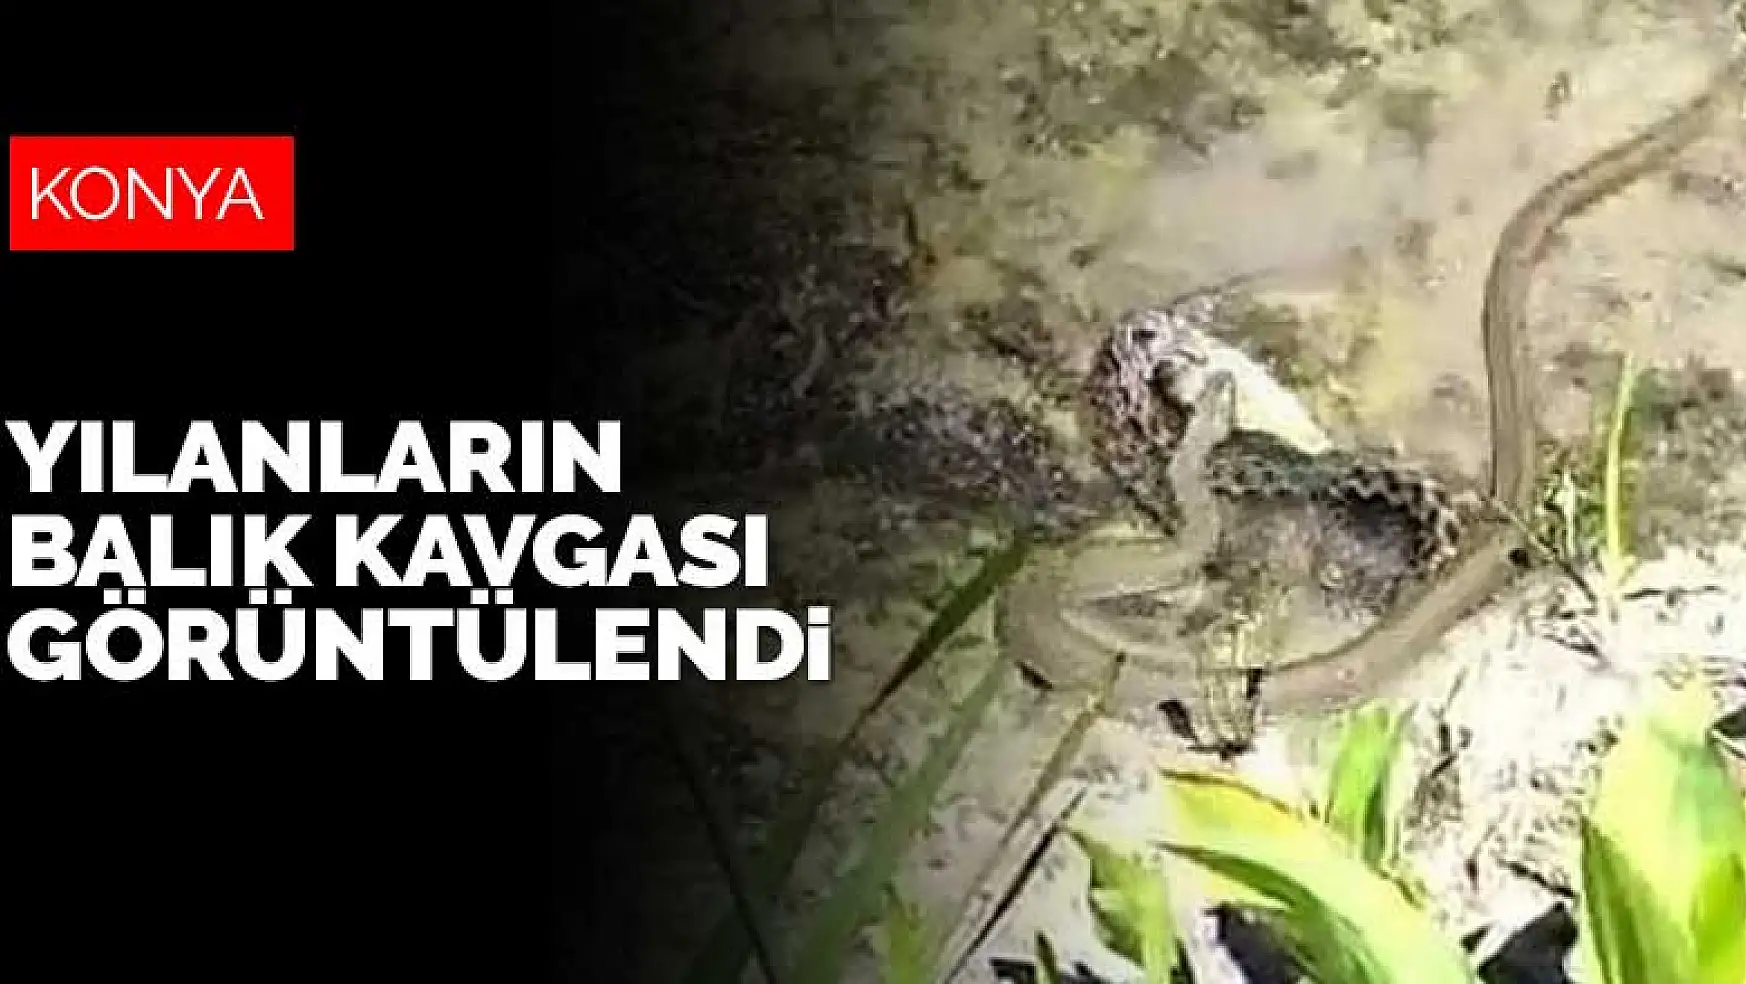 Beyşehir Gölü'nde su yılanlarının balık kavgası görüntülendi